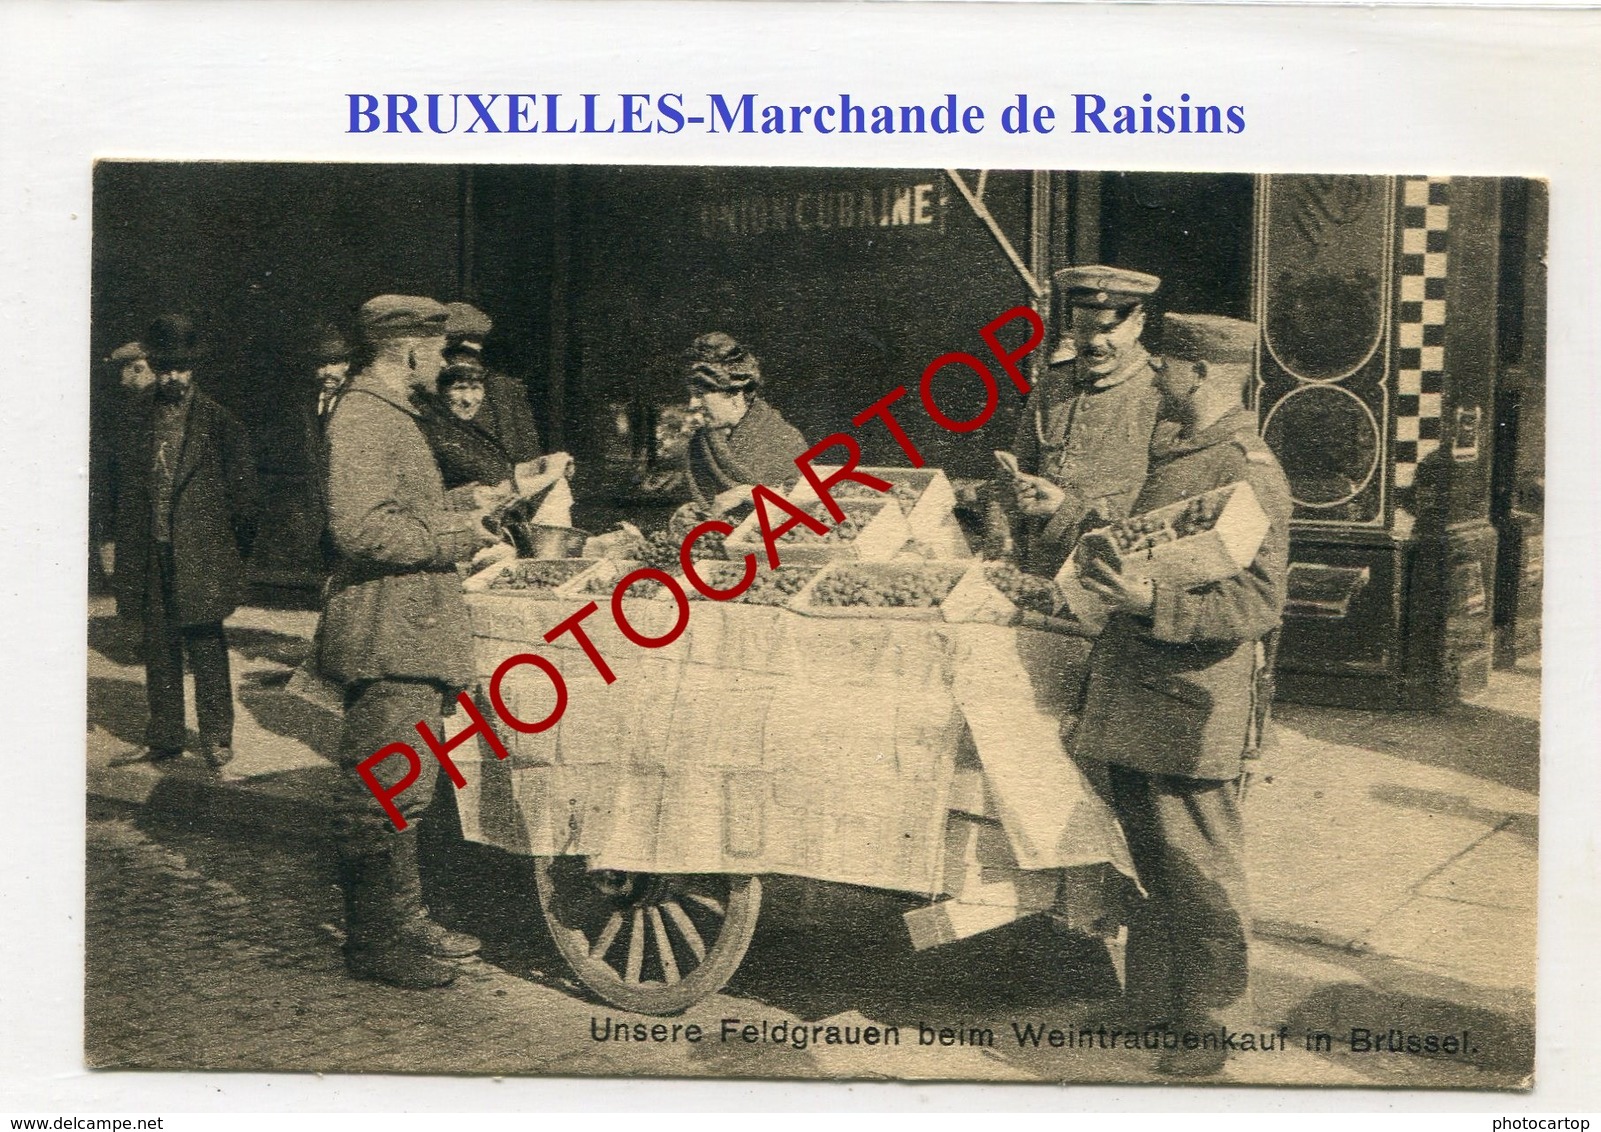 BRUXELLES-BRÜSSEL-Marchande De Raisins-CARTE Allemande-Guerre 14-18-1WK-BELGIQUE-BELGIEN- - Marchés